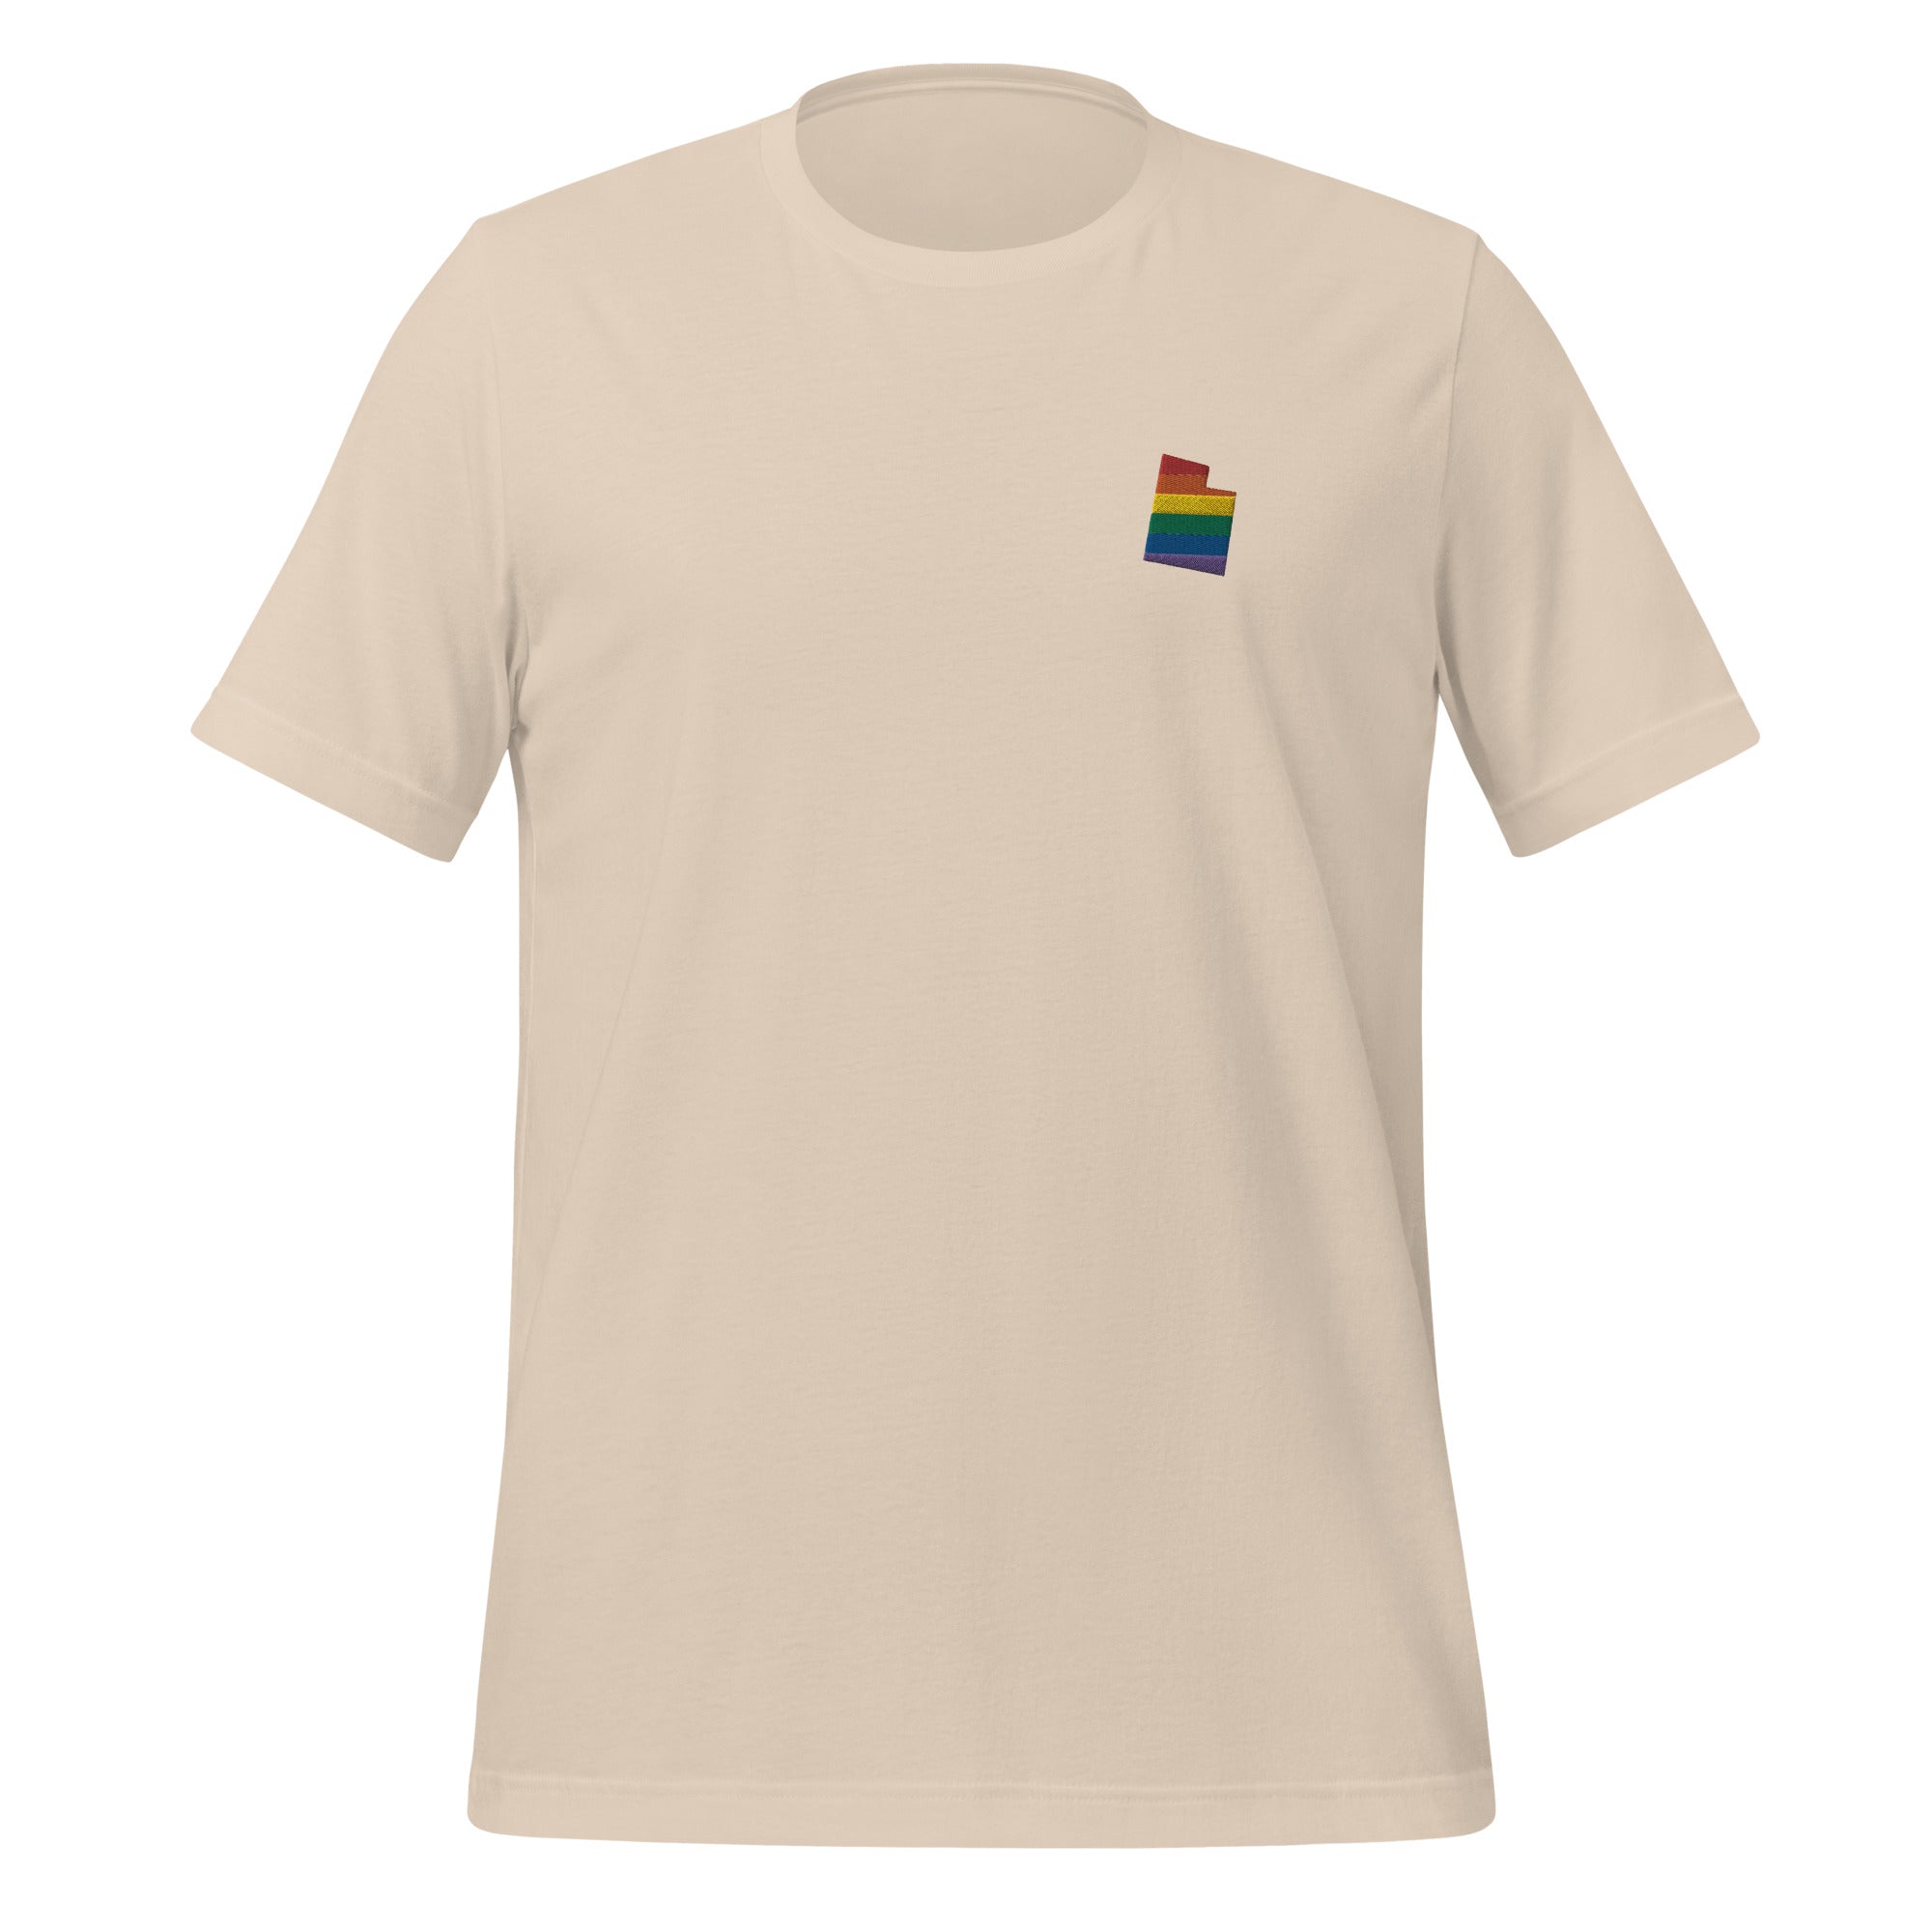 Utah Rainbow Embroidered Unisex T-Shirt